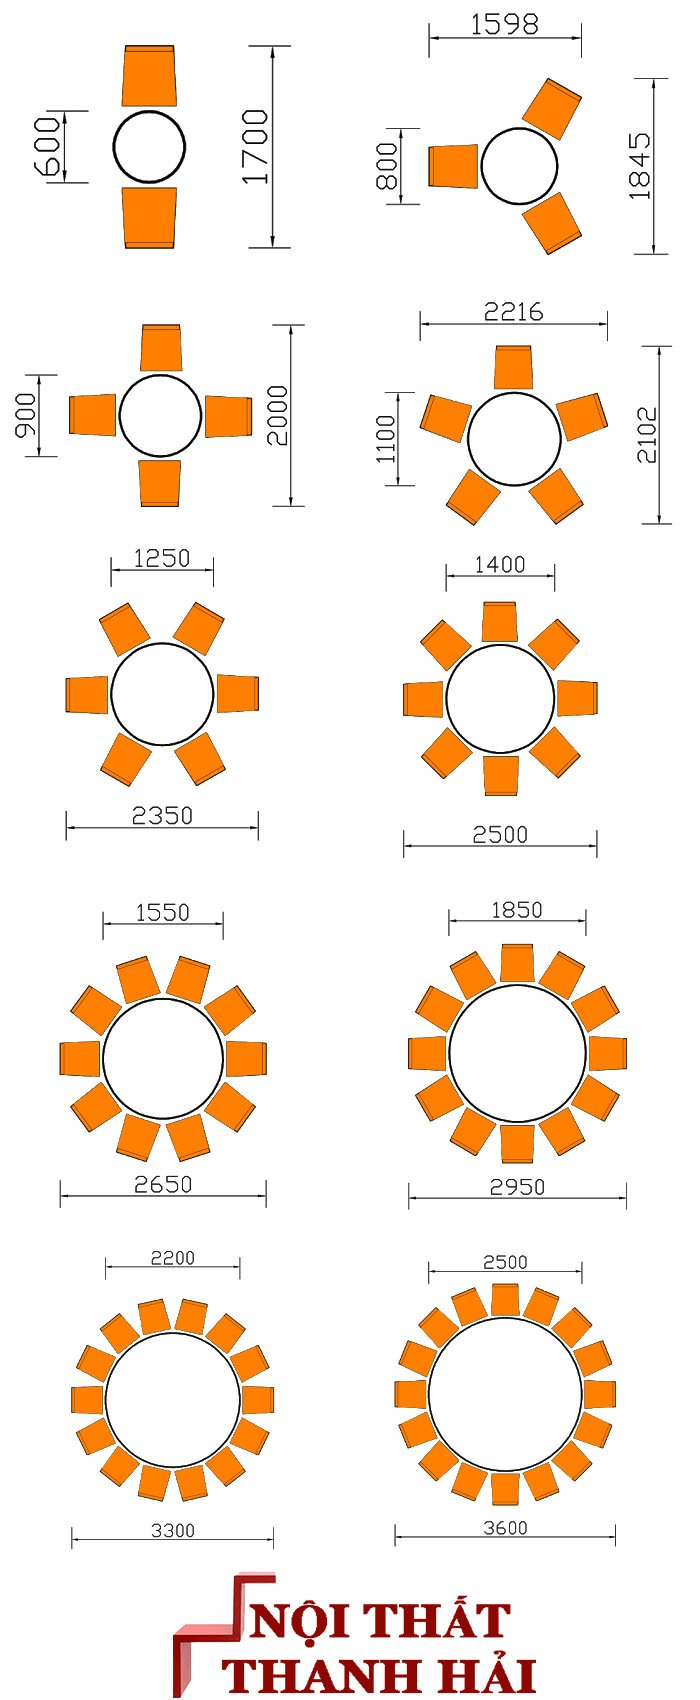 Kích thước bàn ăn hình tròn 2, 3, 4, 5, 6, 8, 10, 12, 14, 16 ghế chuẩn phong thủy